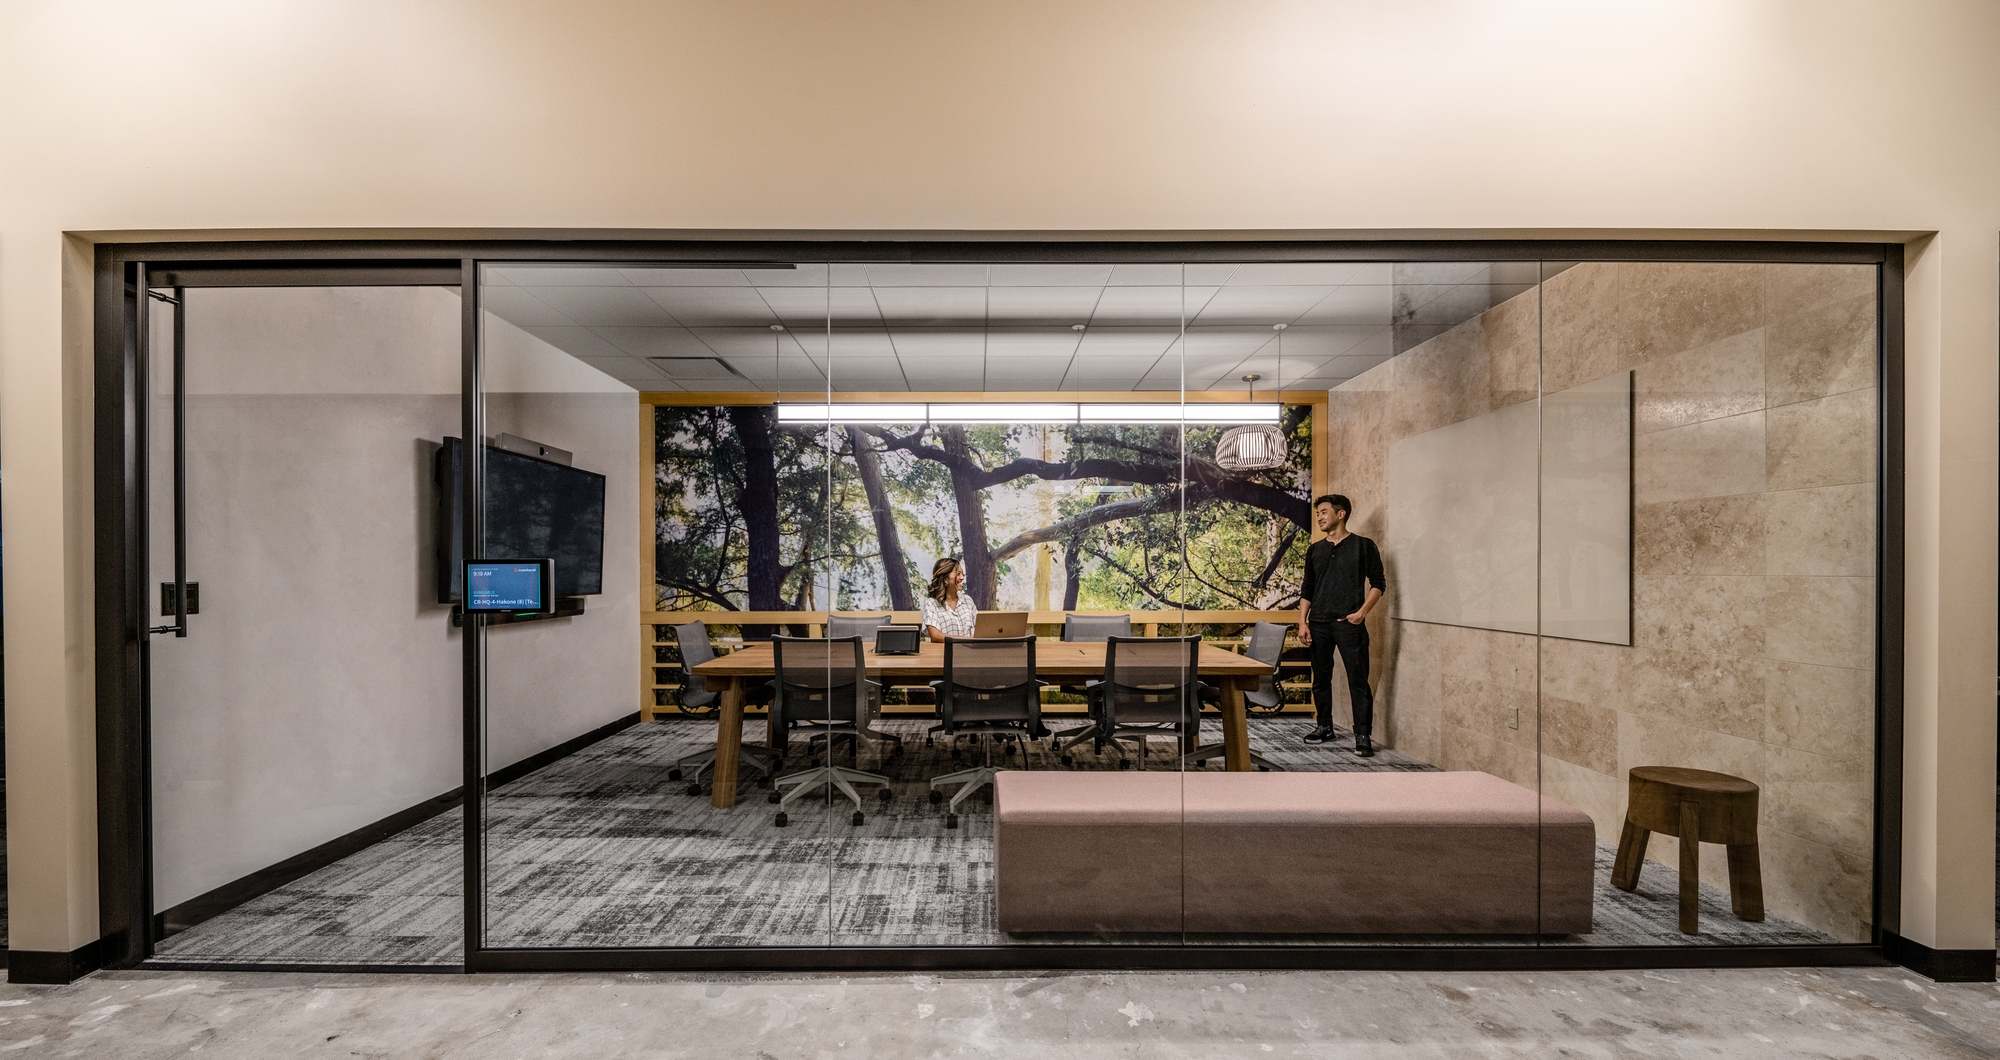 图片[19]|Crunchyroll办公室——旧金山|ART-Arrakis | 建筑室内设计的创新与灵感